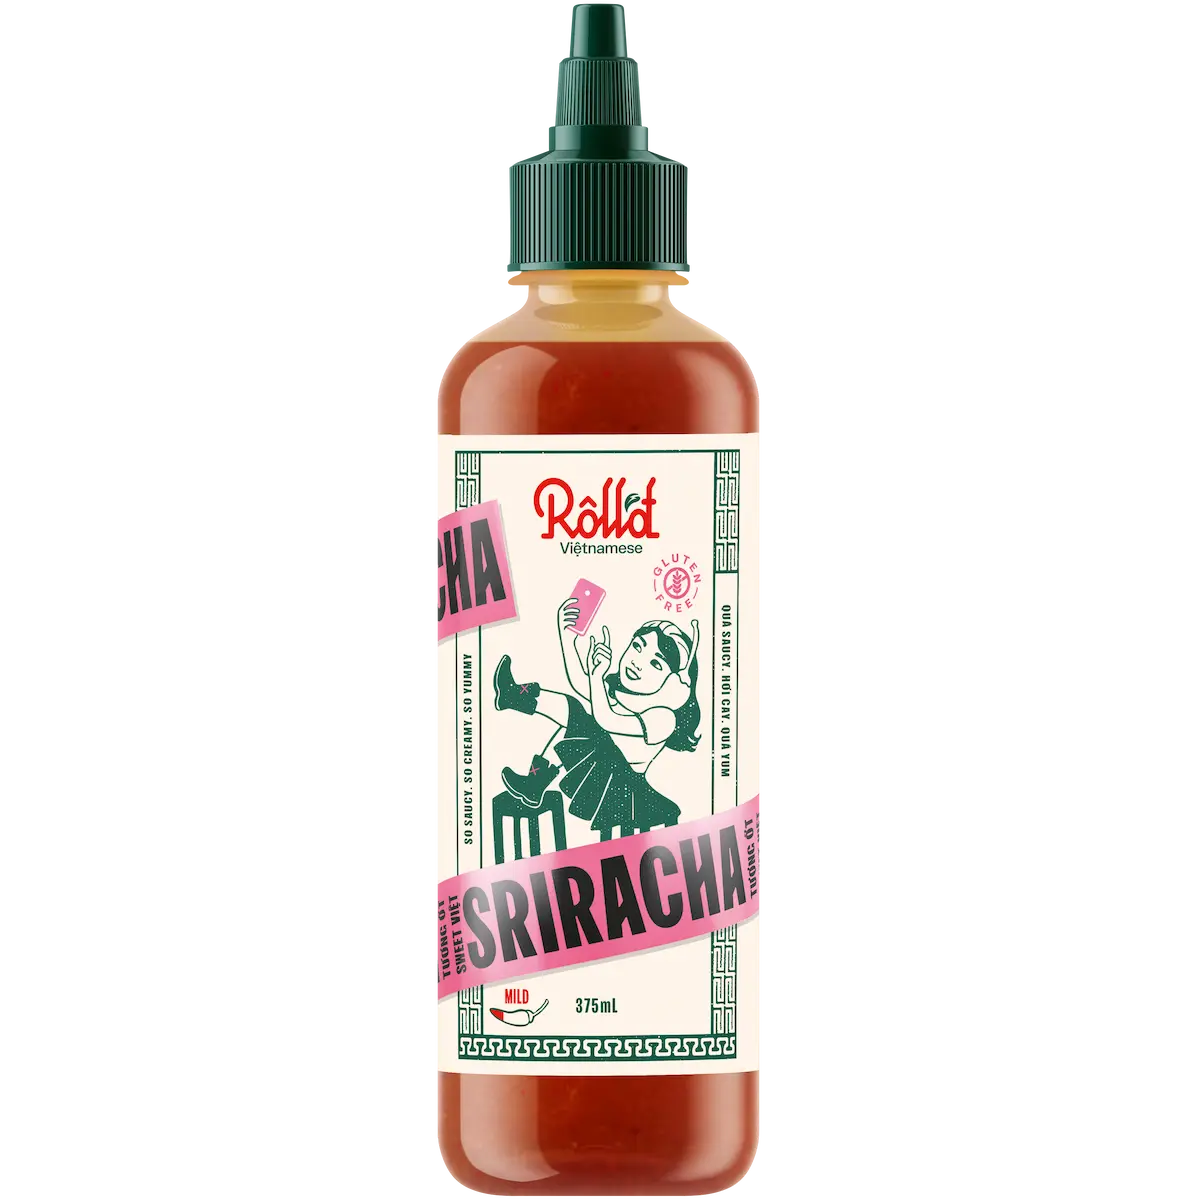 Roll’d Sweet Vietnamese Sriracha Sauce